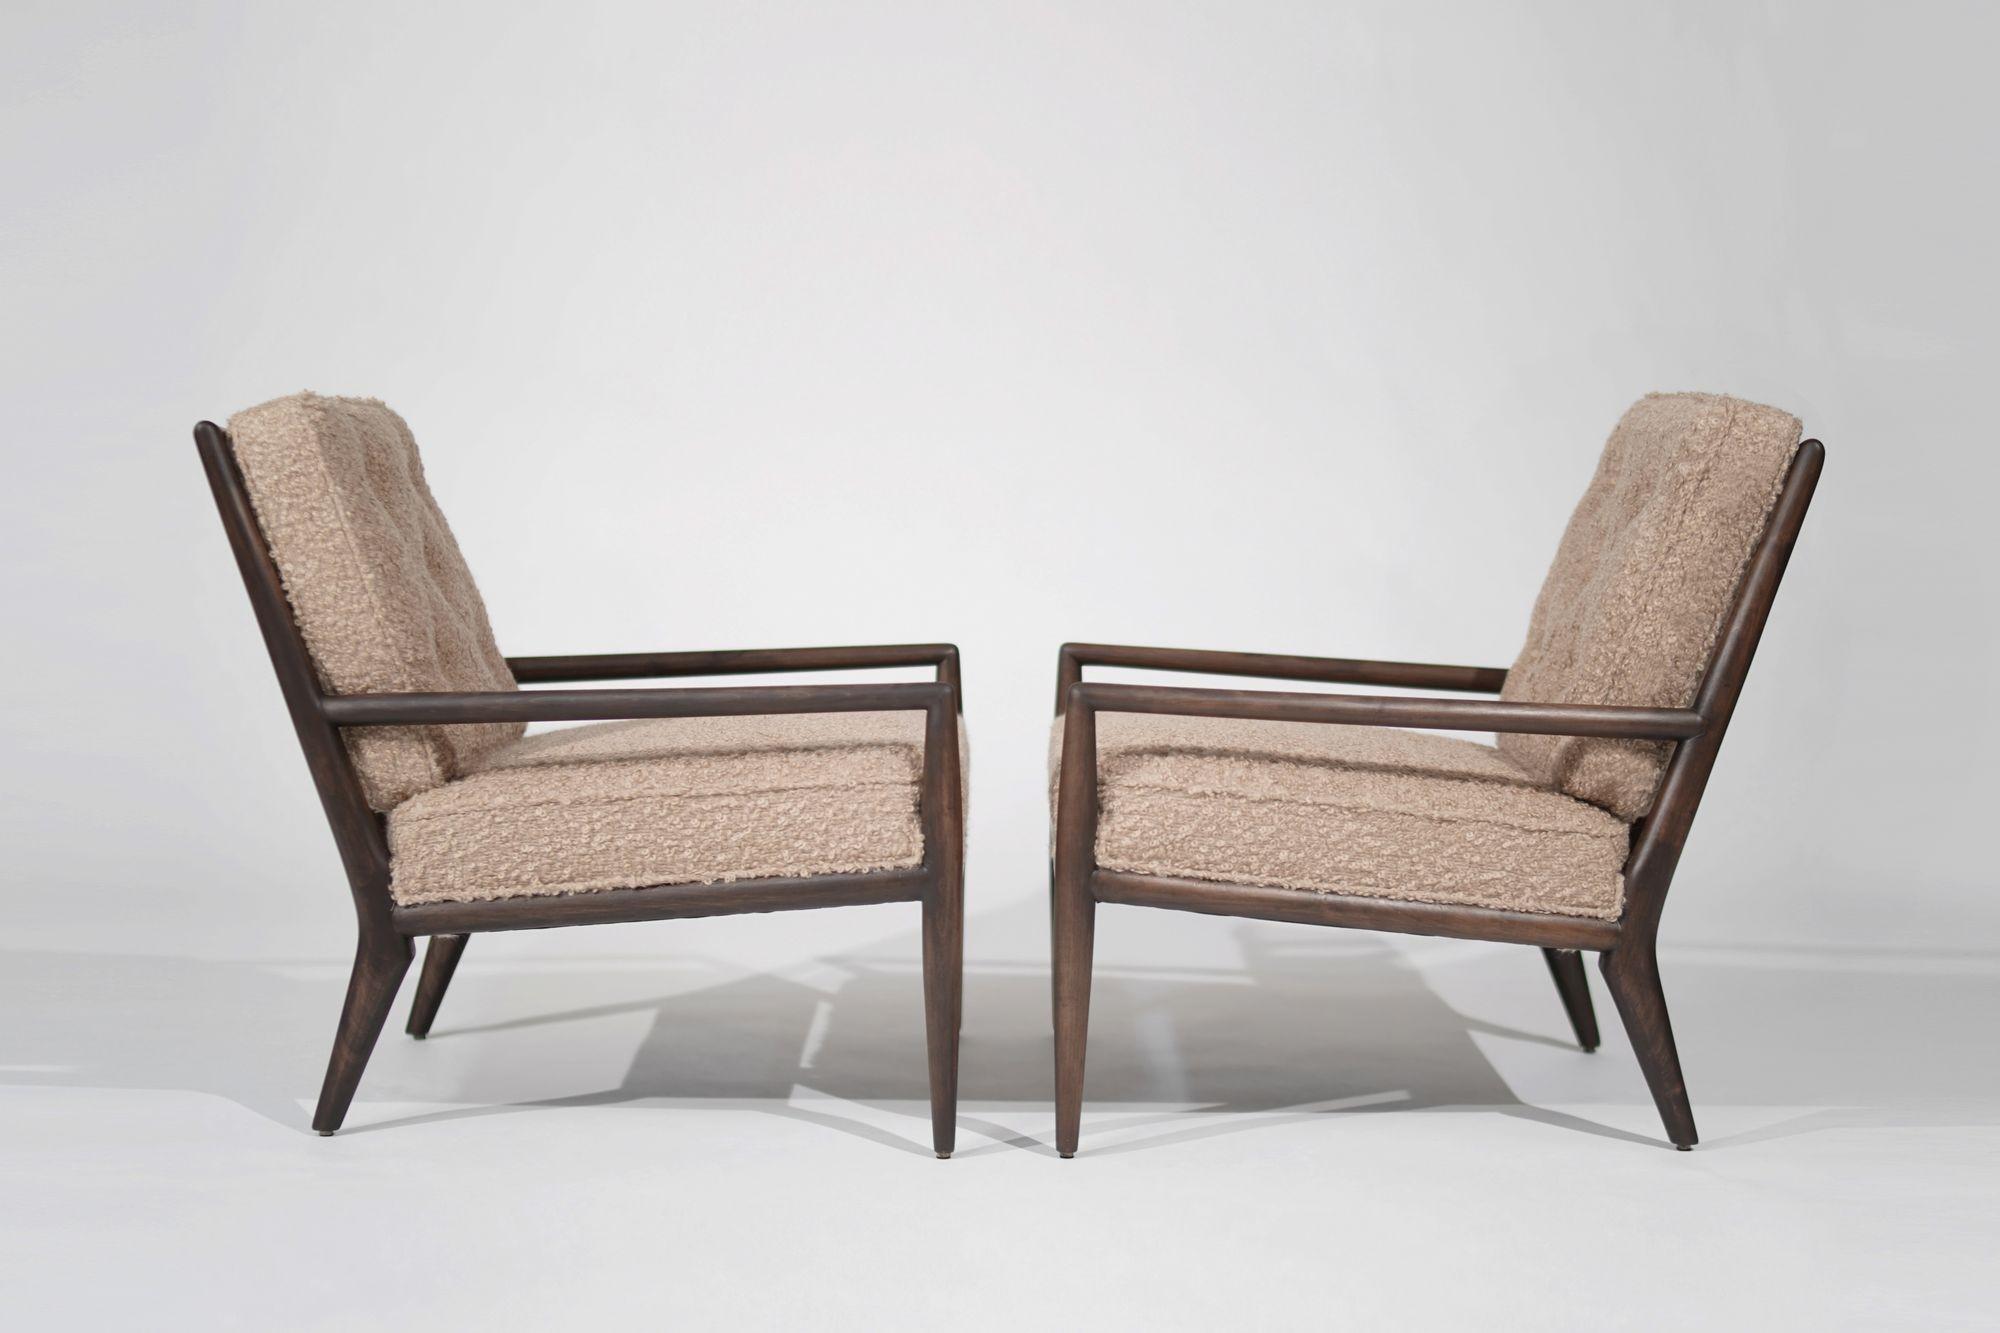 Erleben Sie die zeitlose Eleganz des Mid-Century-Modern-Designs mit diesem exquisiten Loungesessel-Set, das von dem renommierten Designer T.H. Robsjohn-Gibbings für Widdicomb. Diese um 1950-1959 gefertigten Stühle sind eine perfekte Mischung aus